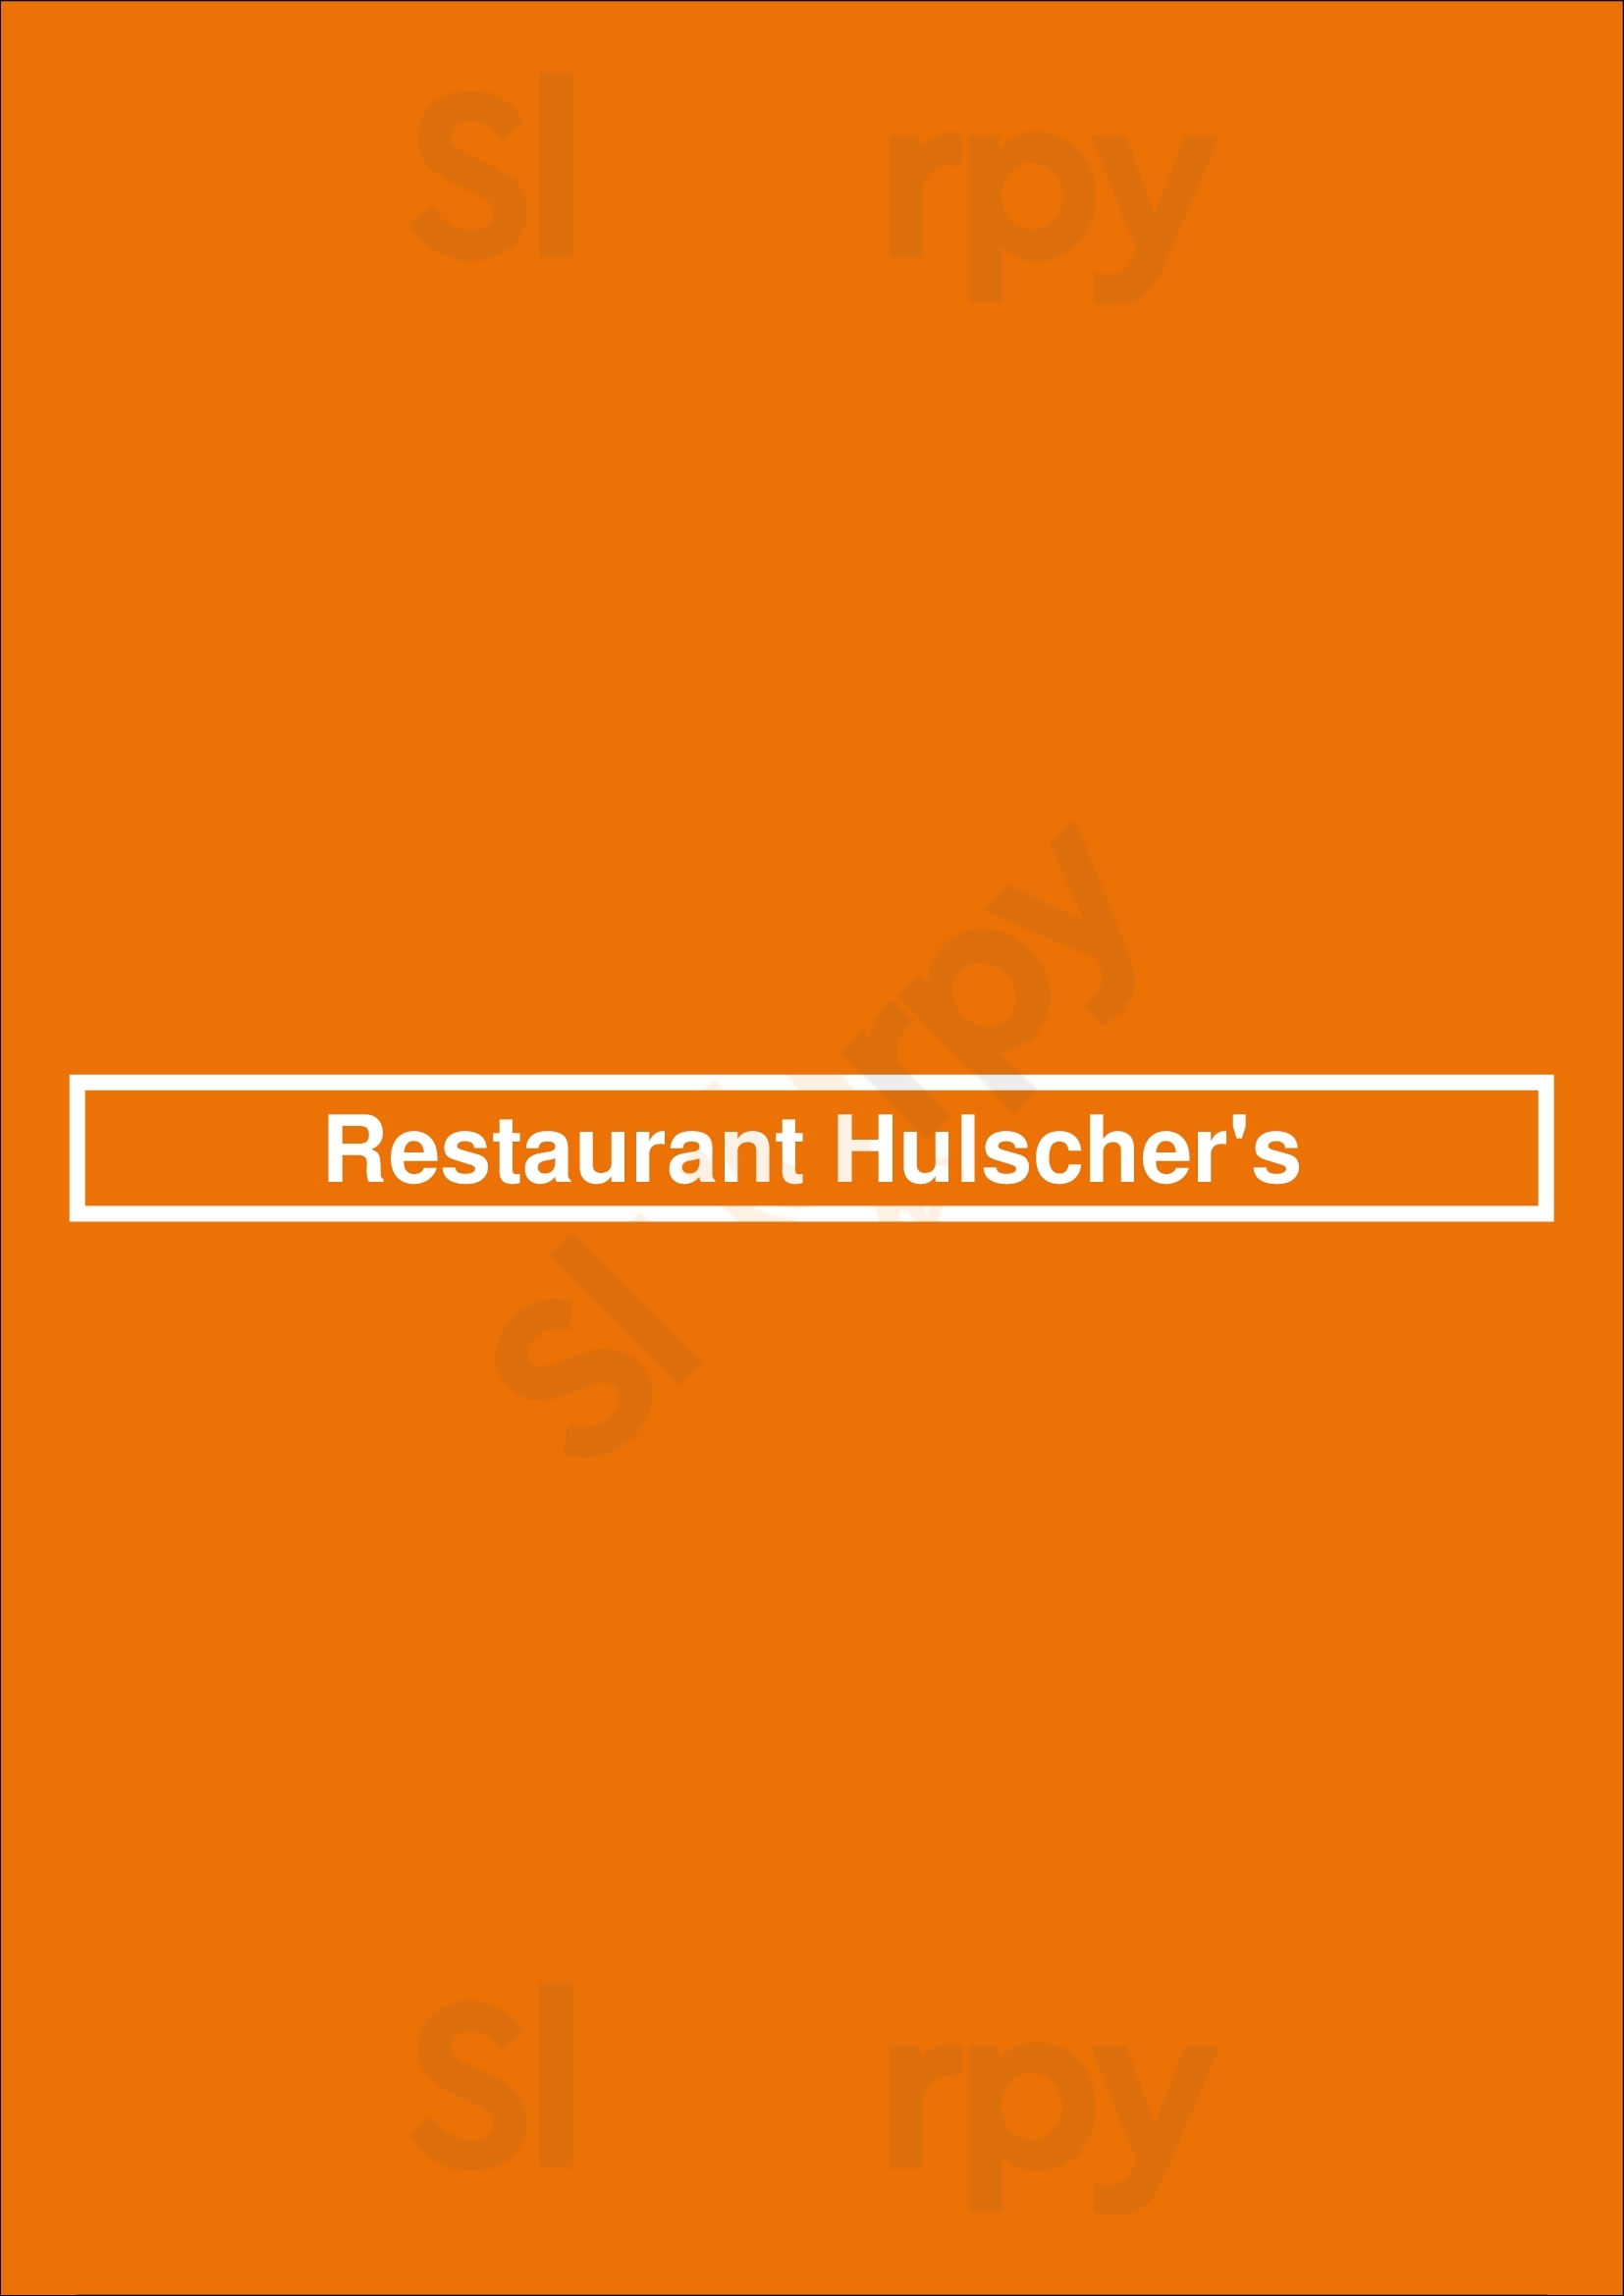 Restaurant Hulscher's Amsterdam Menu - 1